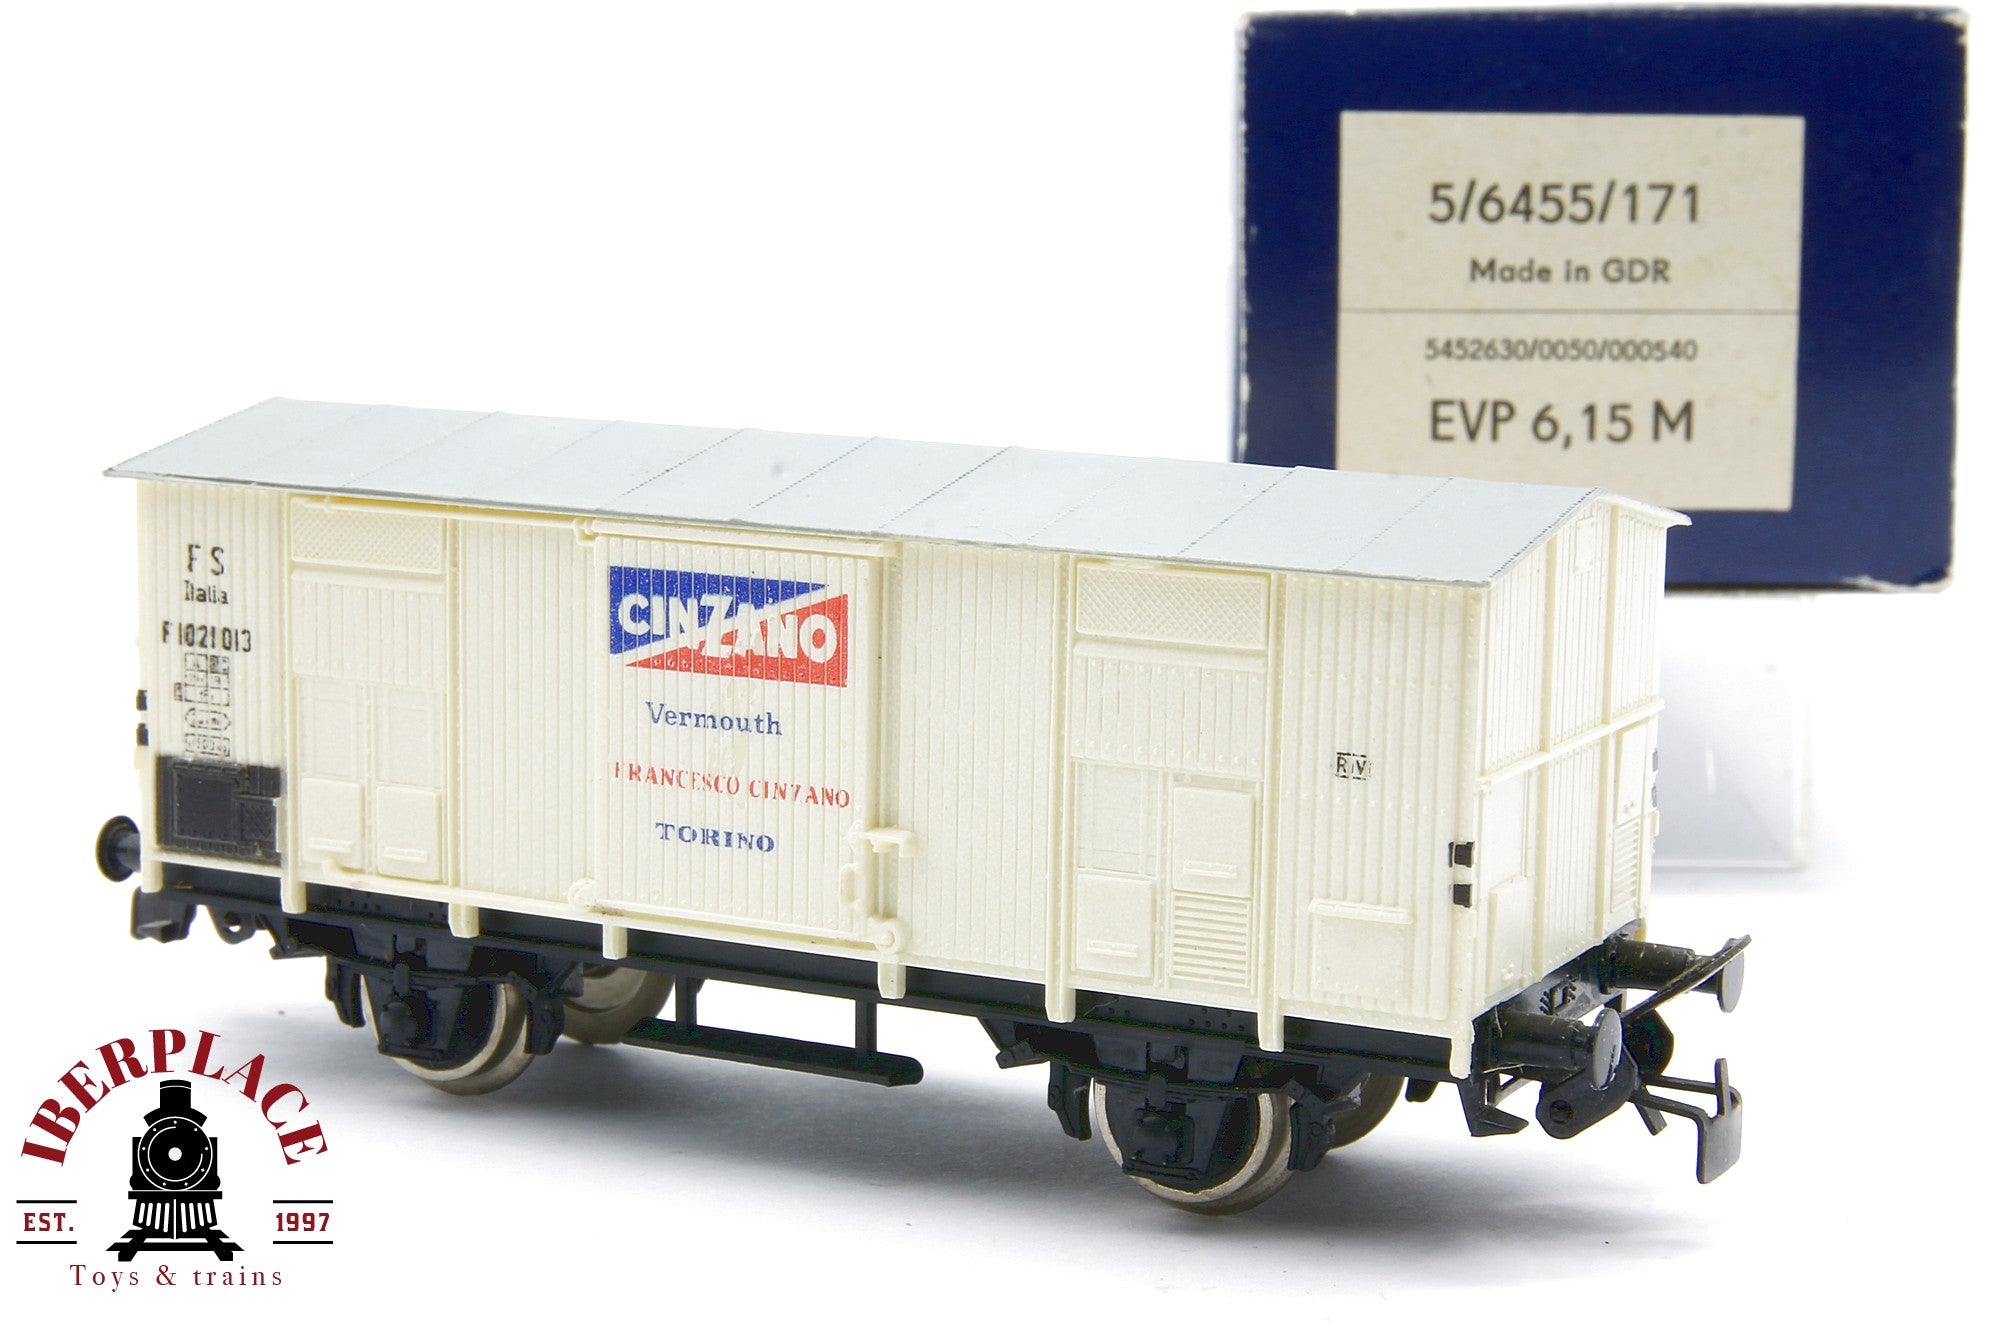 1:87 DC PIKO 5/6455/171 vagón mercancías Cinzano Vermouth FS Güterwagen H0 Escala ho 00 Modelismo